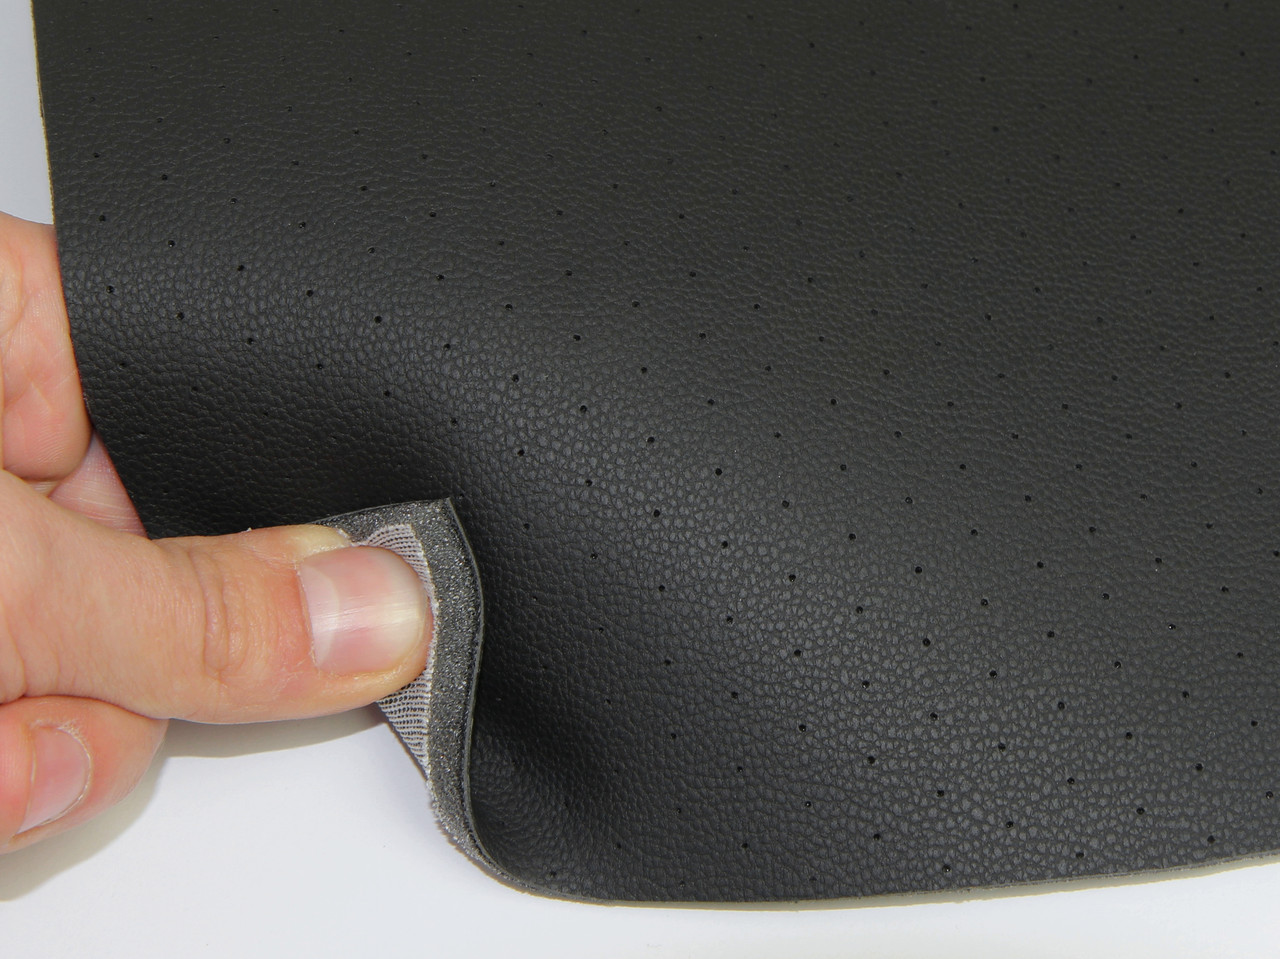 Кожзам перфорированный черный (DX-12/3) для сидений авто, на поролоне и сетке, толщина 5мм, ширина 1.60м детальная фотка